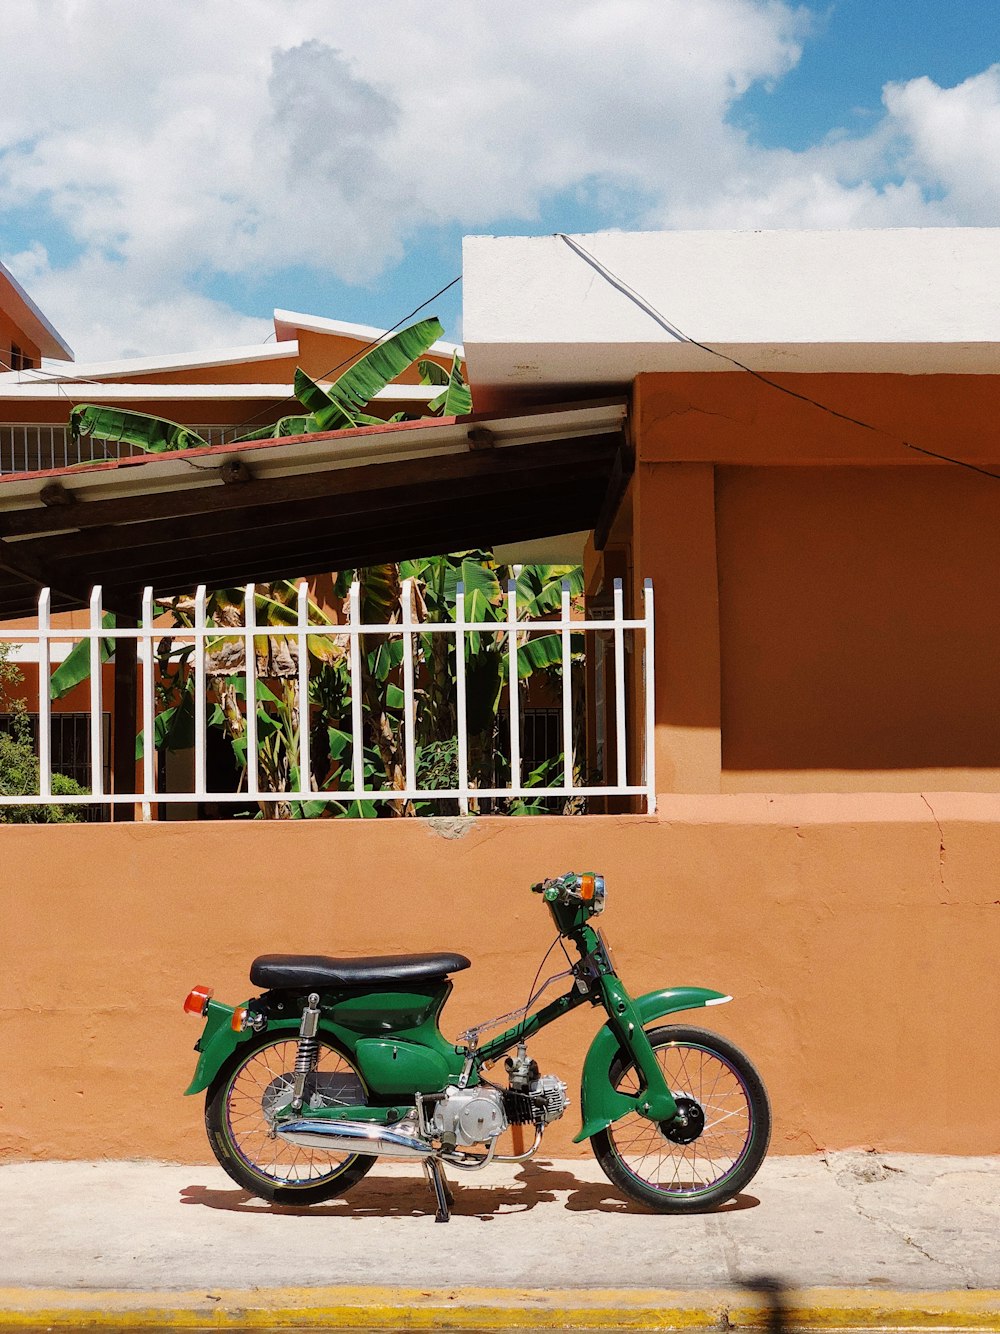 Moto verte et noire garée à côté d’un bâtiment en béton brun pendant la journée